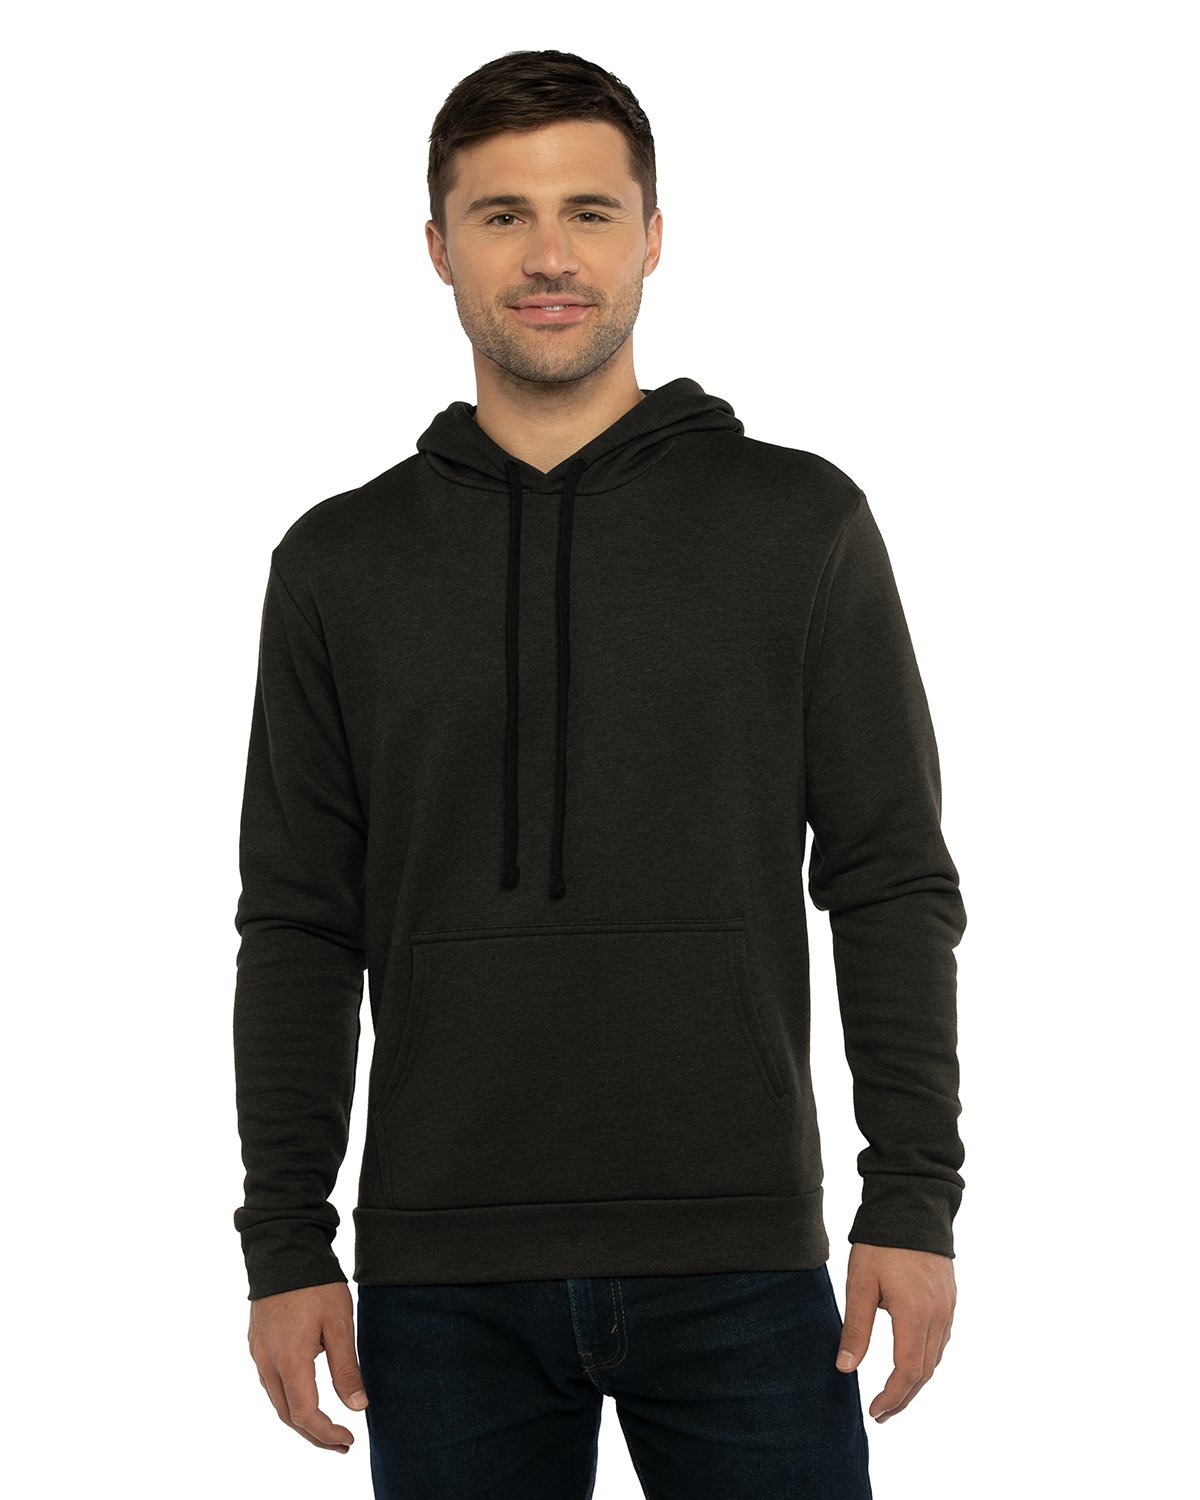 Unisex Malibu Pullover Hooded Sweatshirt-